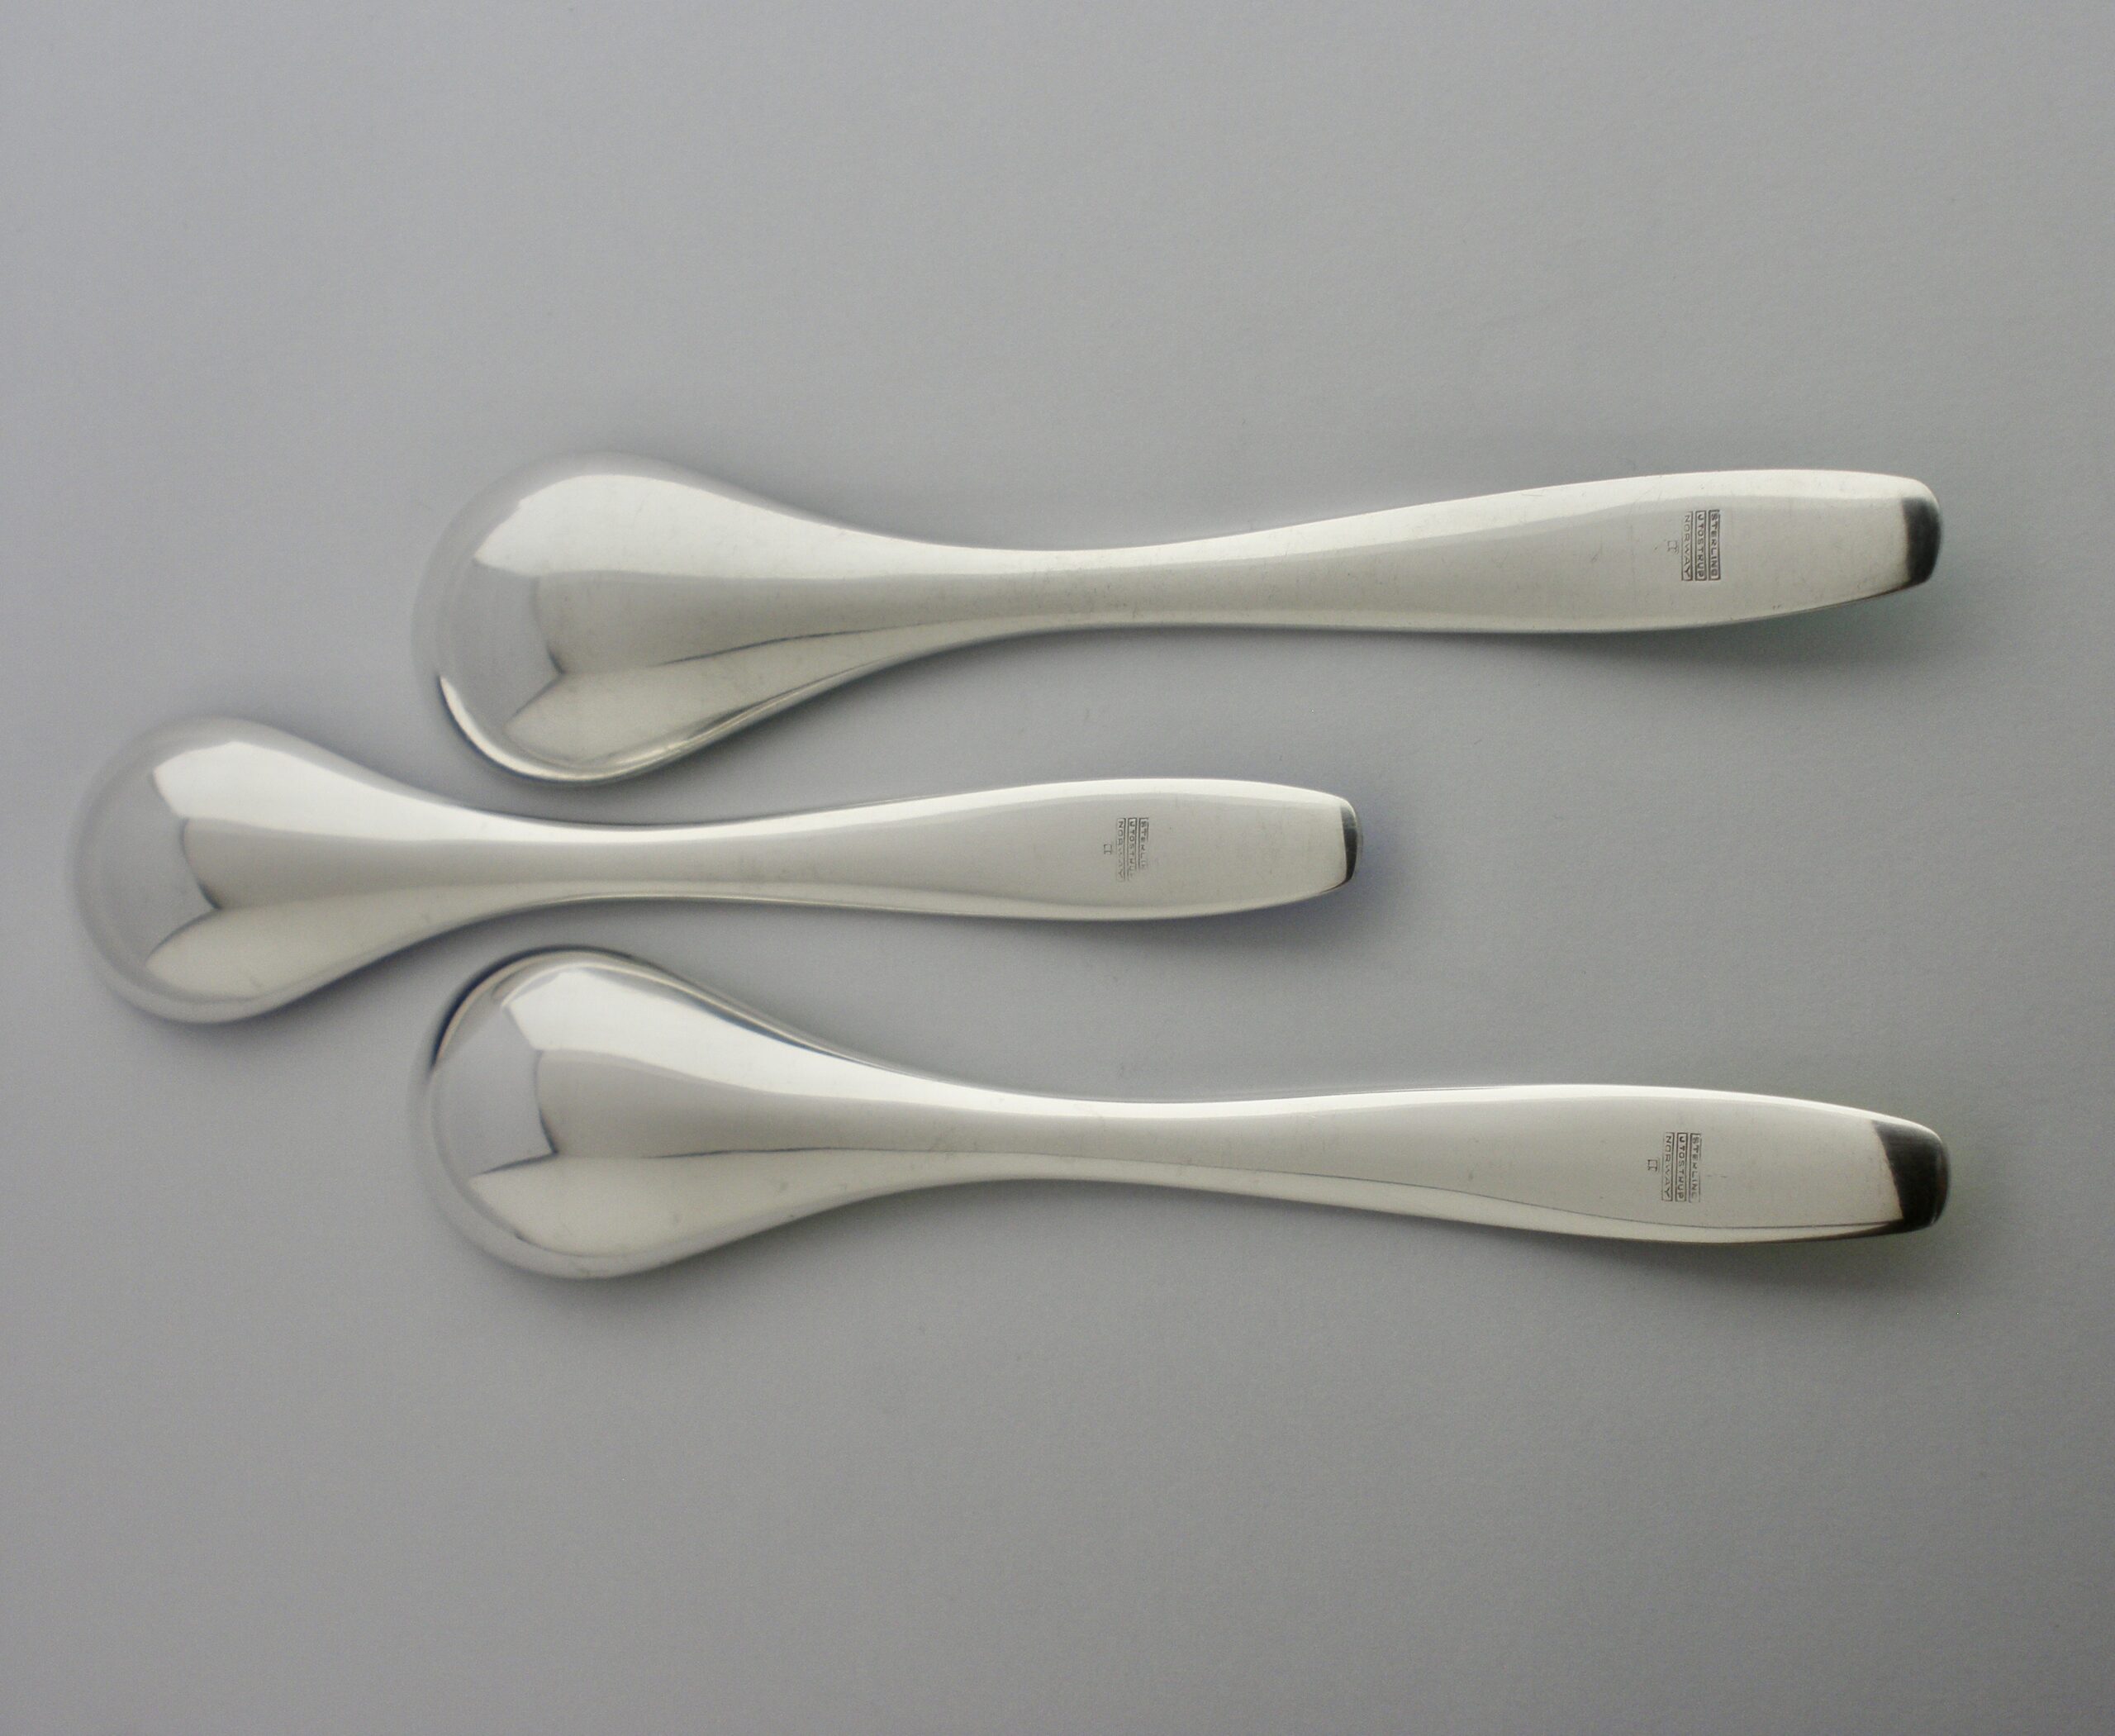 Grete Prytz Kittelsen and Arne Korsmo, for Tostrup, trio of enamel silver  spoons, Norway, designed 1948-49 (Ref S987) SOLD – John Kelly 1880+